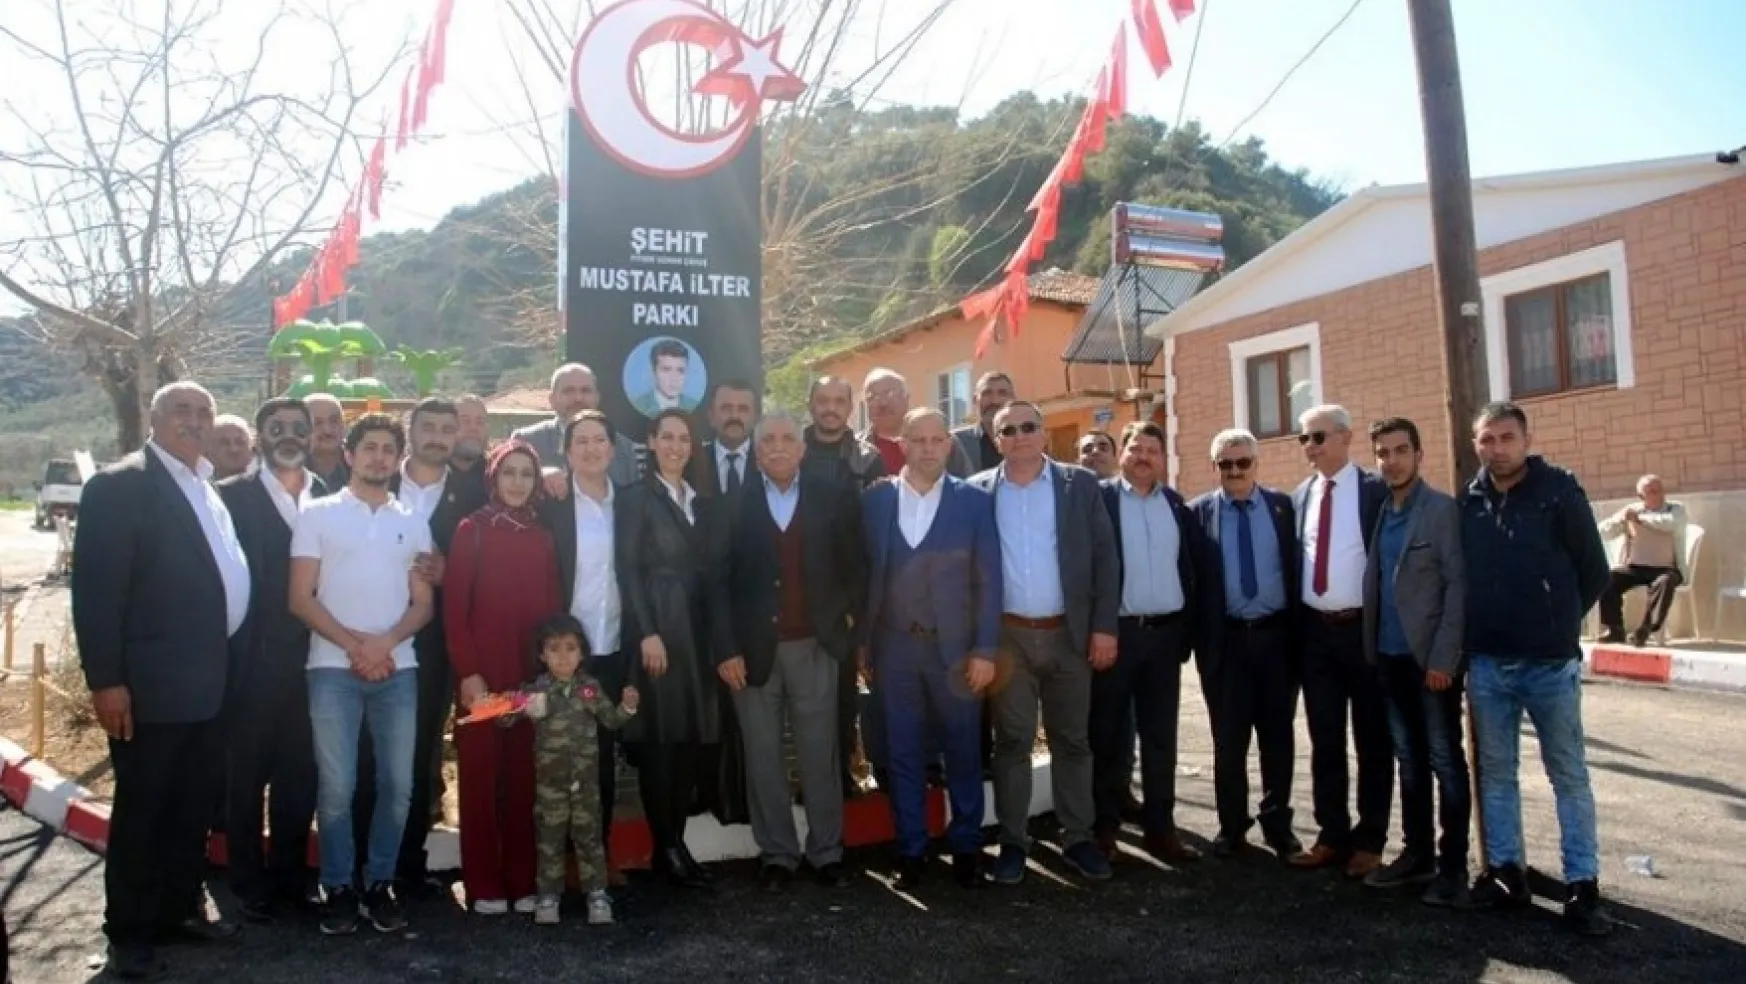 Turgutlu'da Şehit Mustafa İlter'in ismi parkta ölümsüzleştirildi